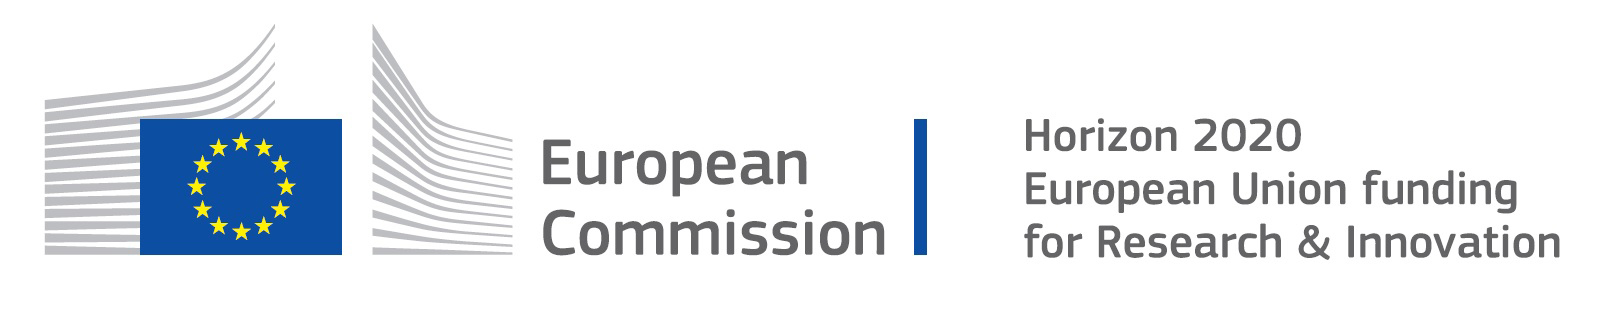 H2020 European Commission